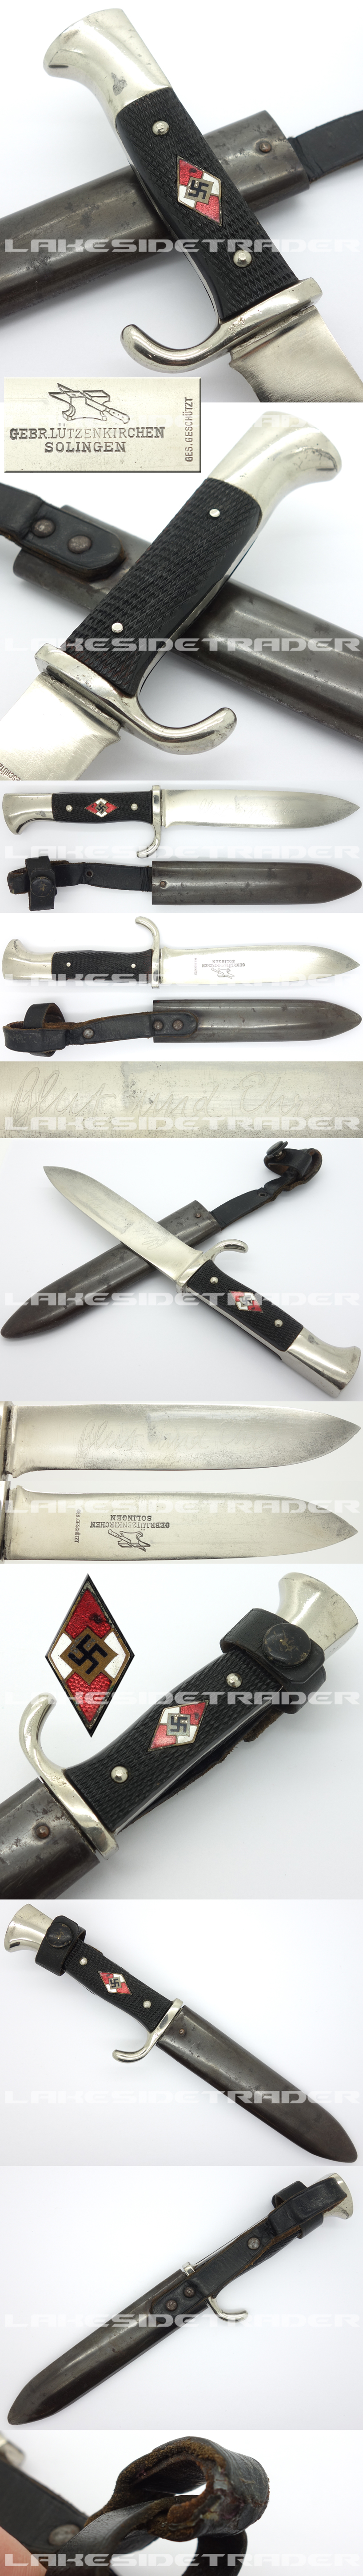 Early Hitler Youth Knife by Gebr. Lützenkirchen